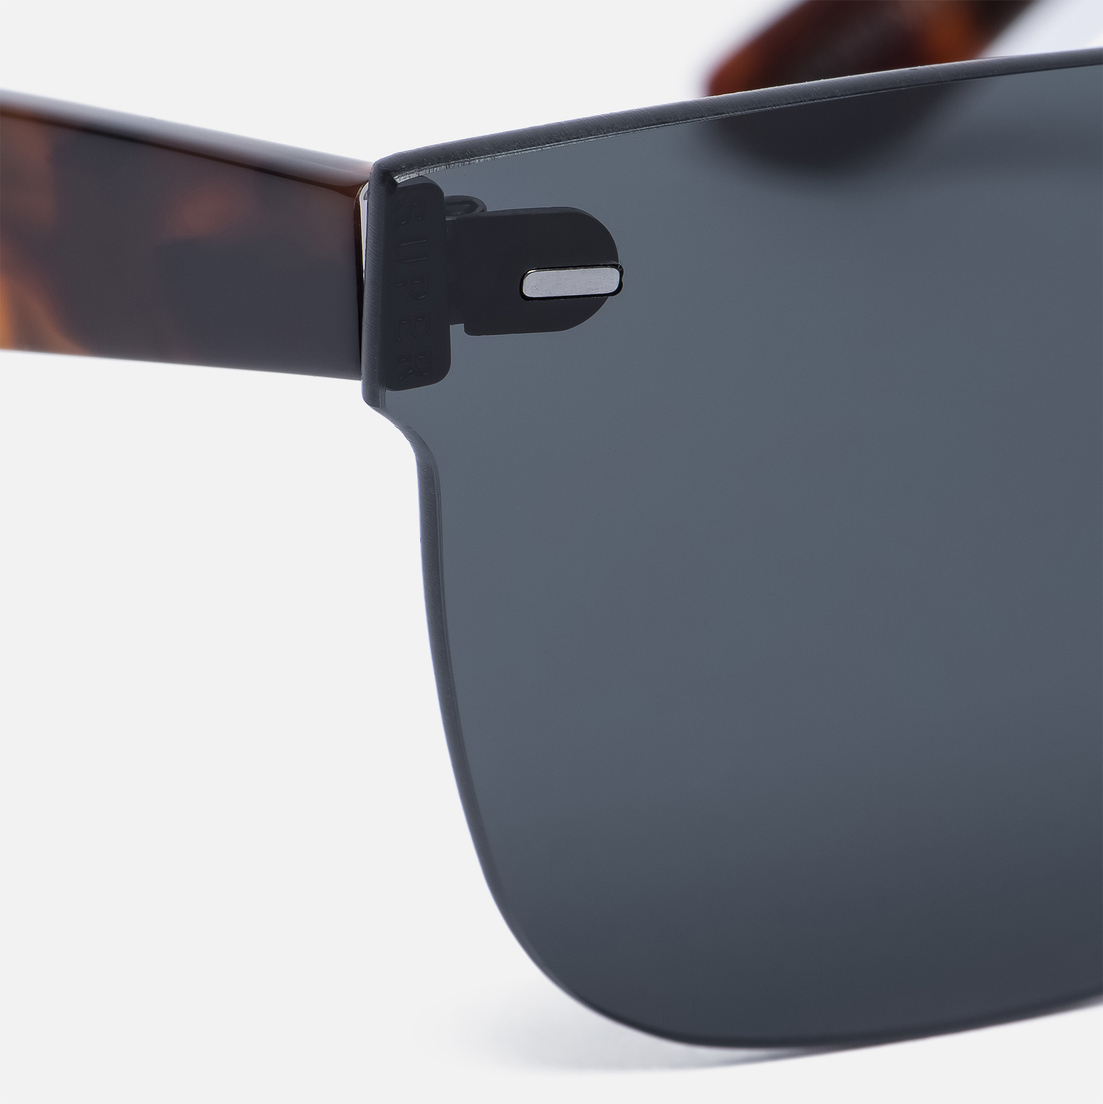 RETROSUPERFUTURE Солнцезащитные очки Tuttolente Screen Flat Top